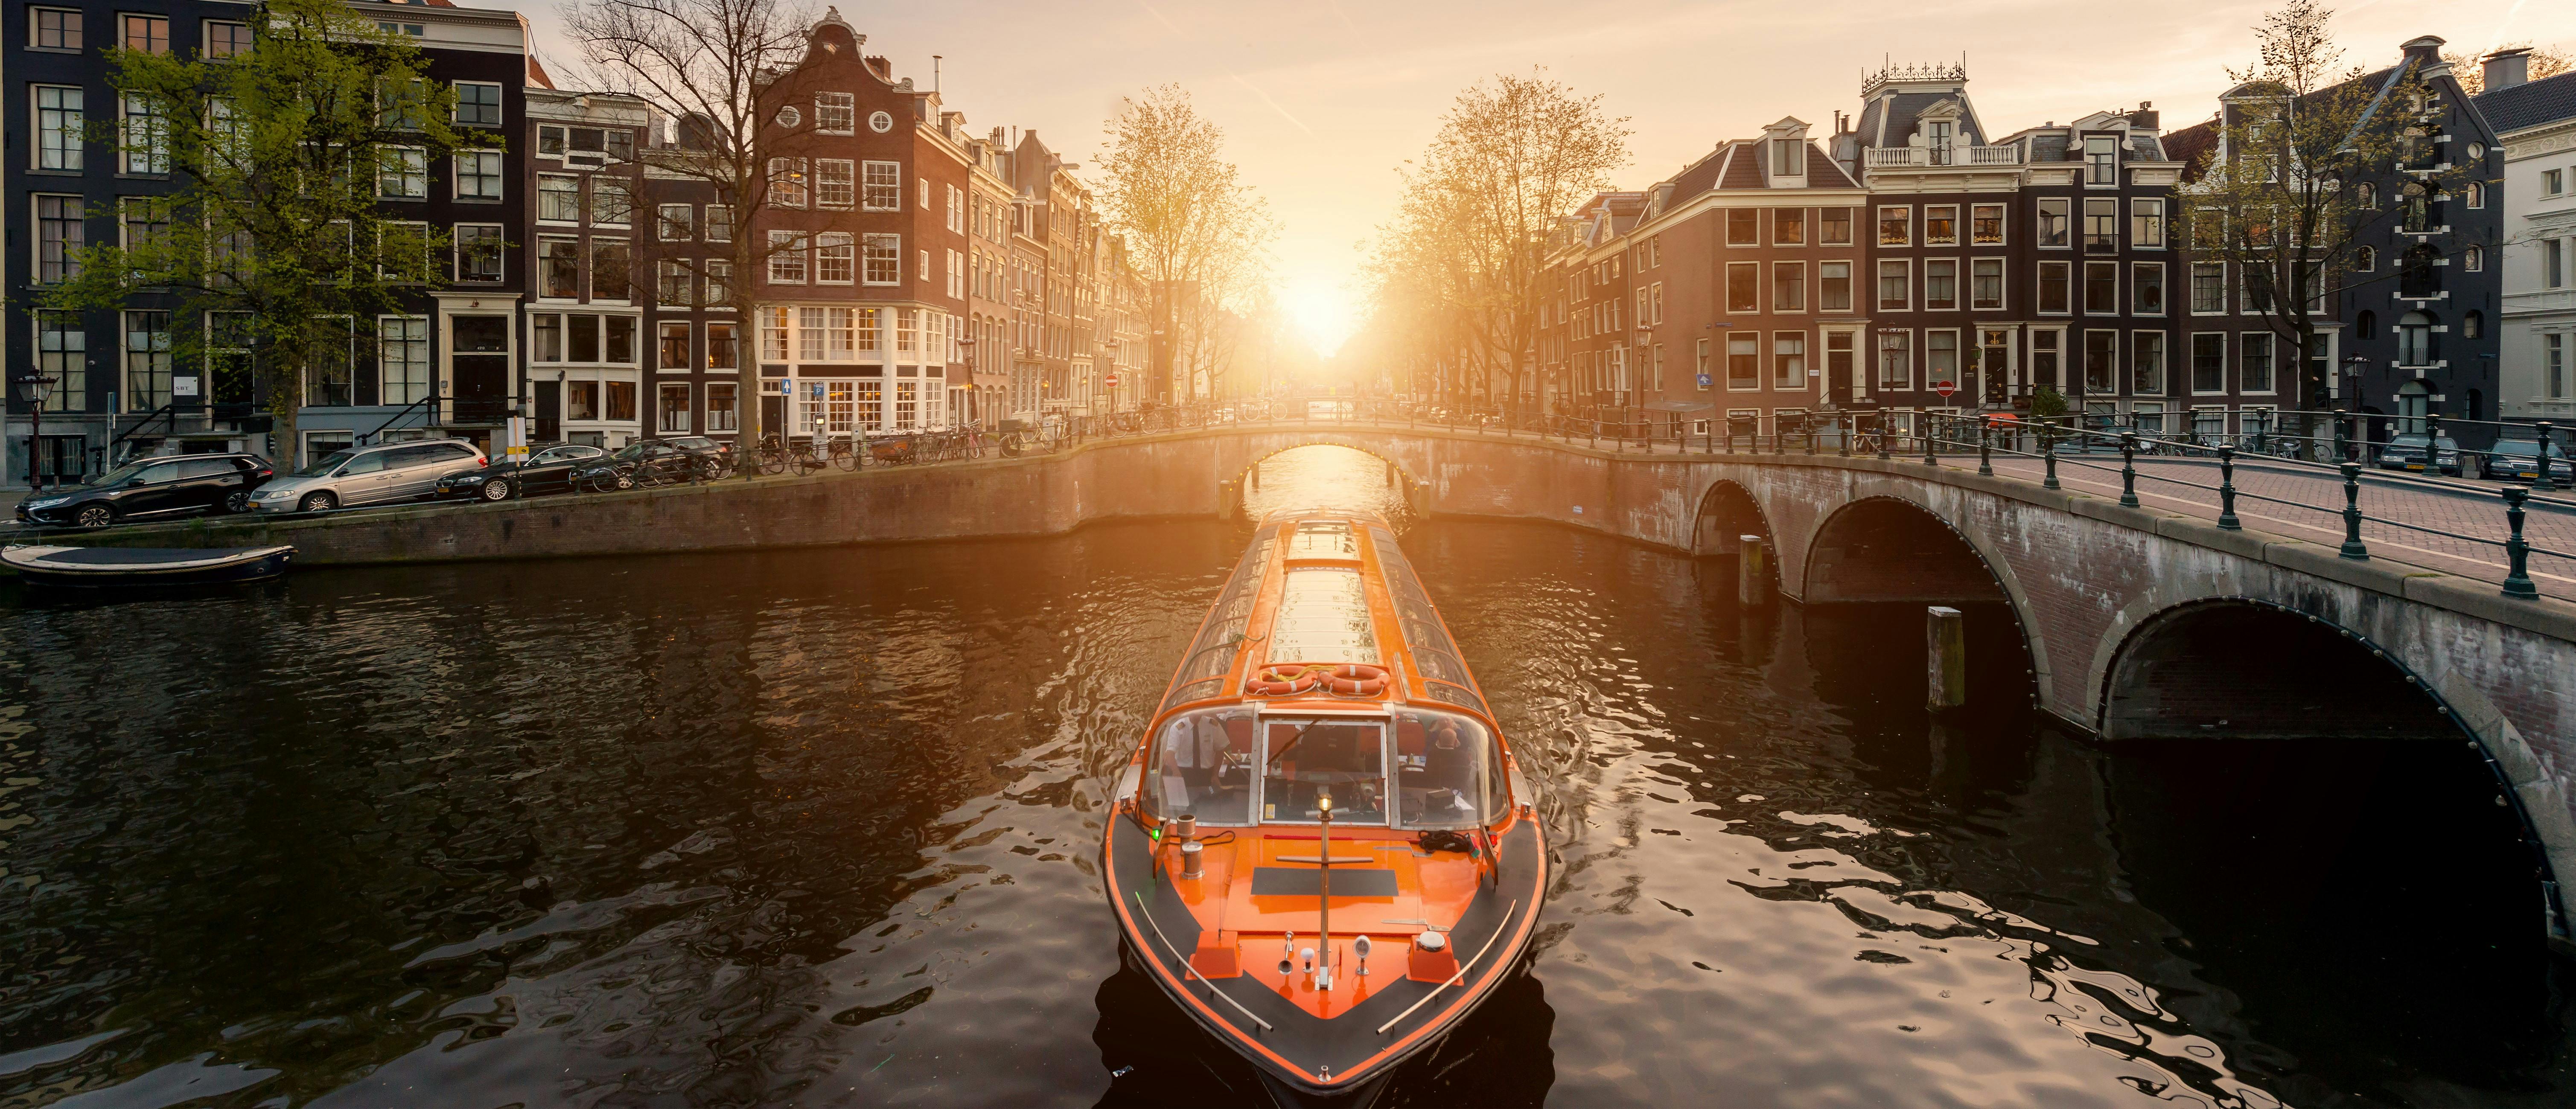 1- oder 2-Tages-Ticket für das Amsterdamer Nachtleben und eine Kanalrundfahrt